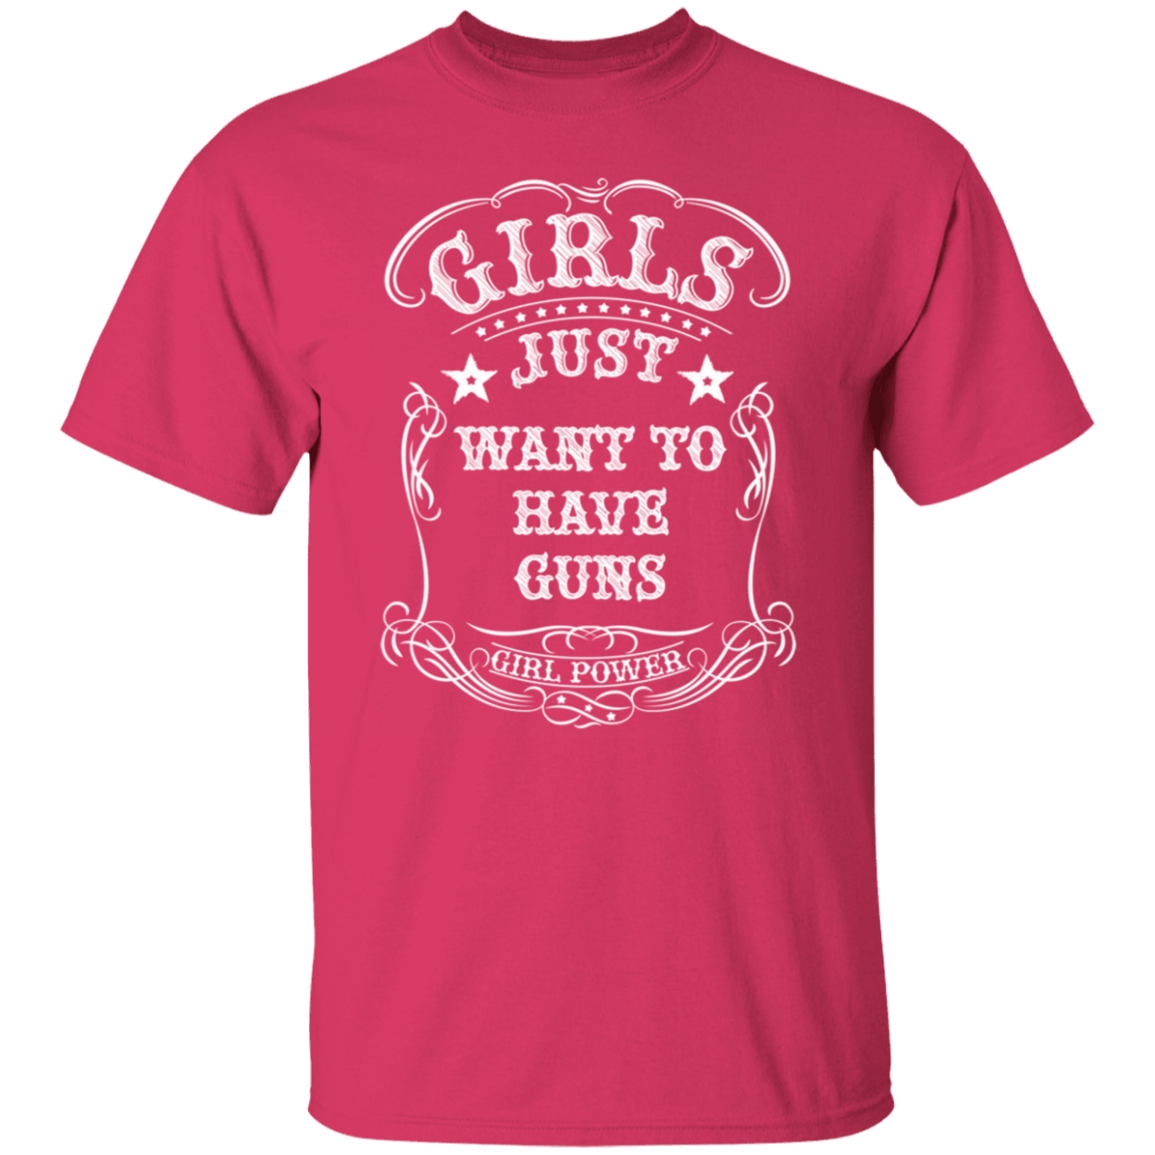 GIRLS WANT GUNS TEE